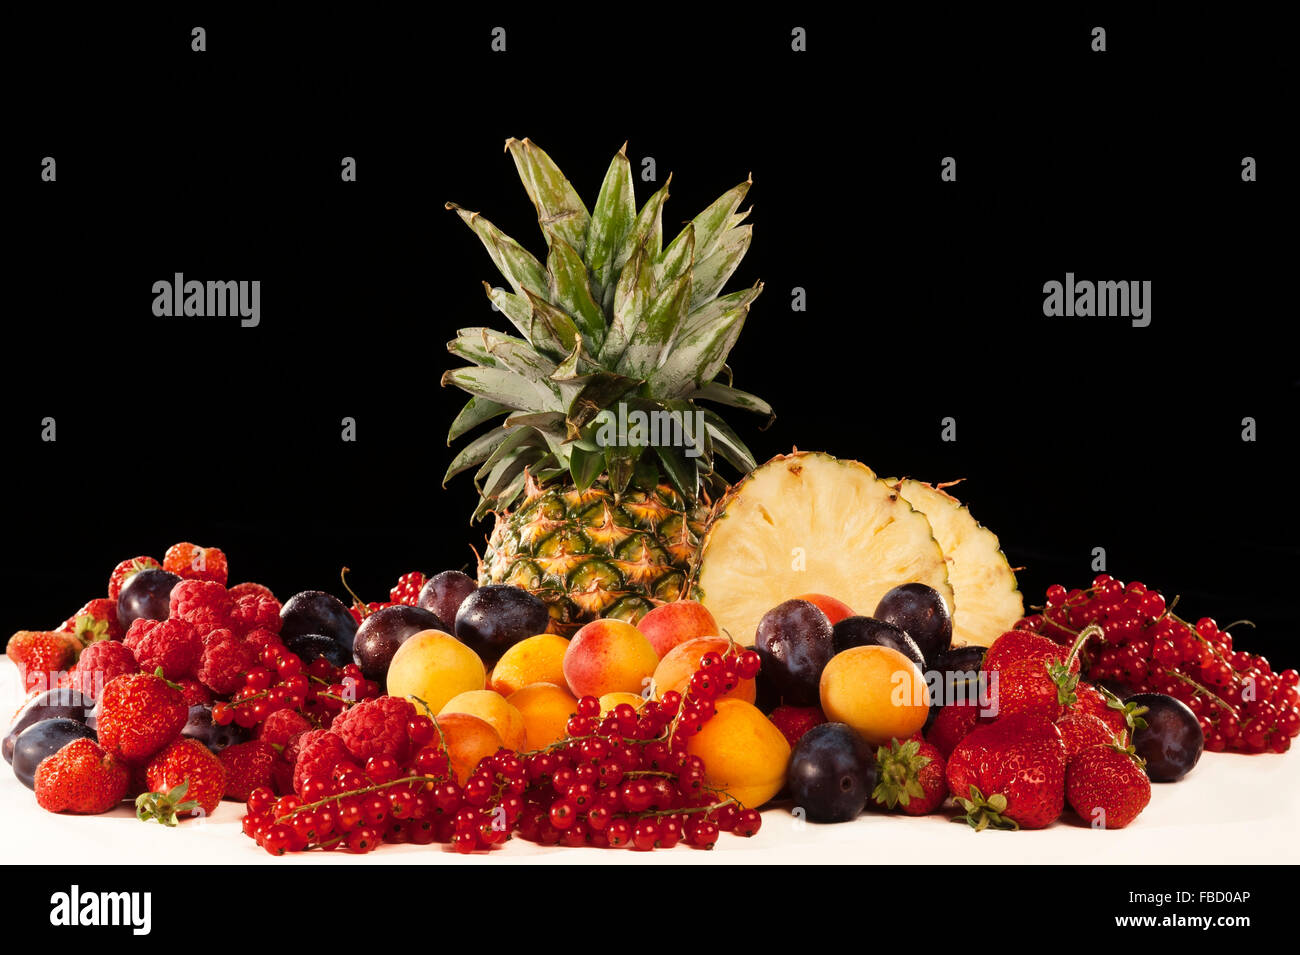 Fruits, nature morte, fond noir Banque D'Images